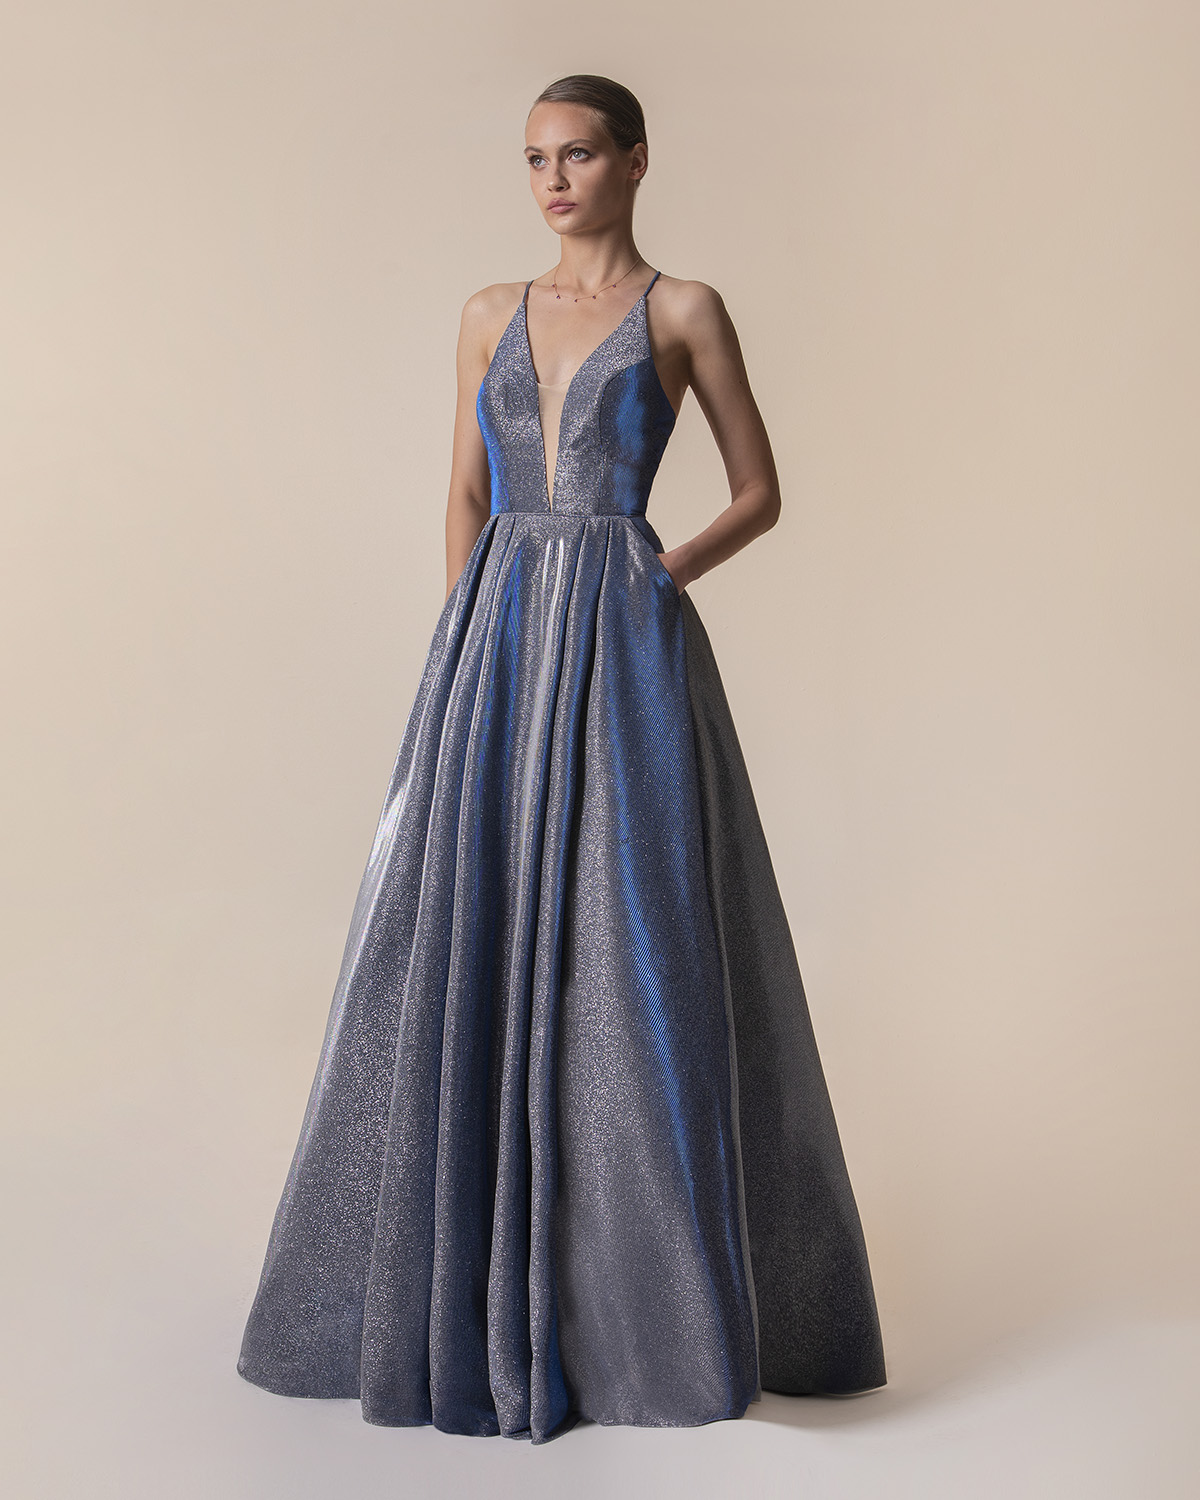 Вечерние платья / Long evening dress with shining fabric and open back